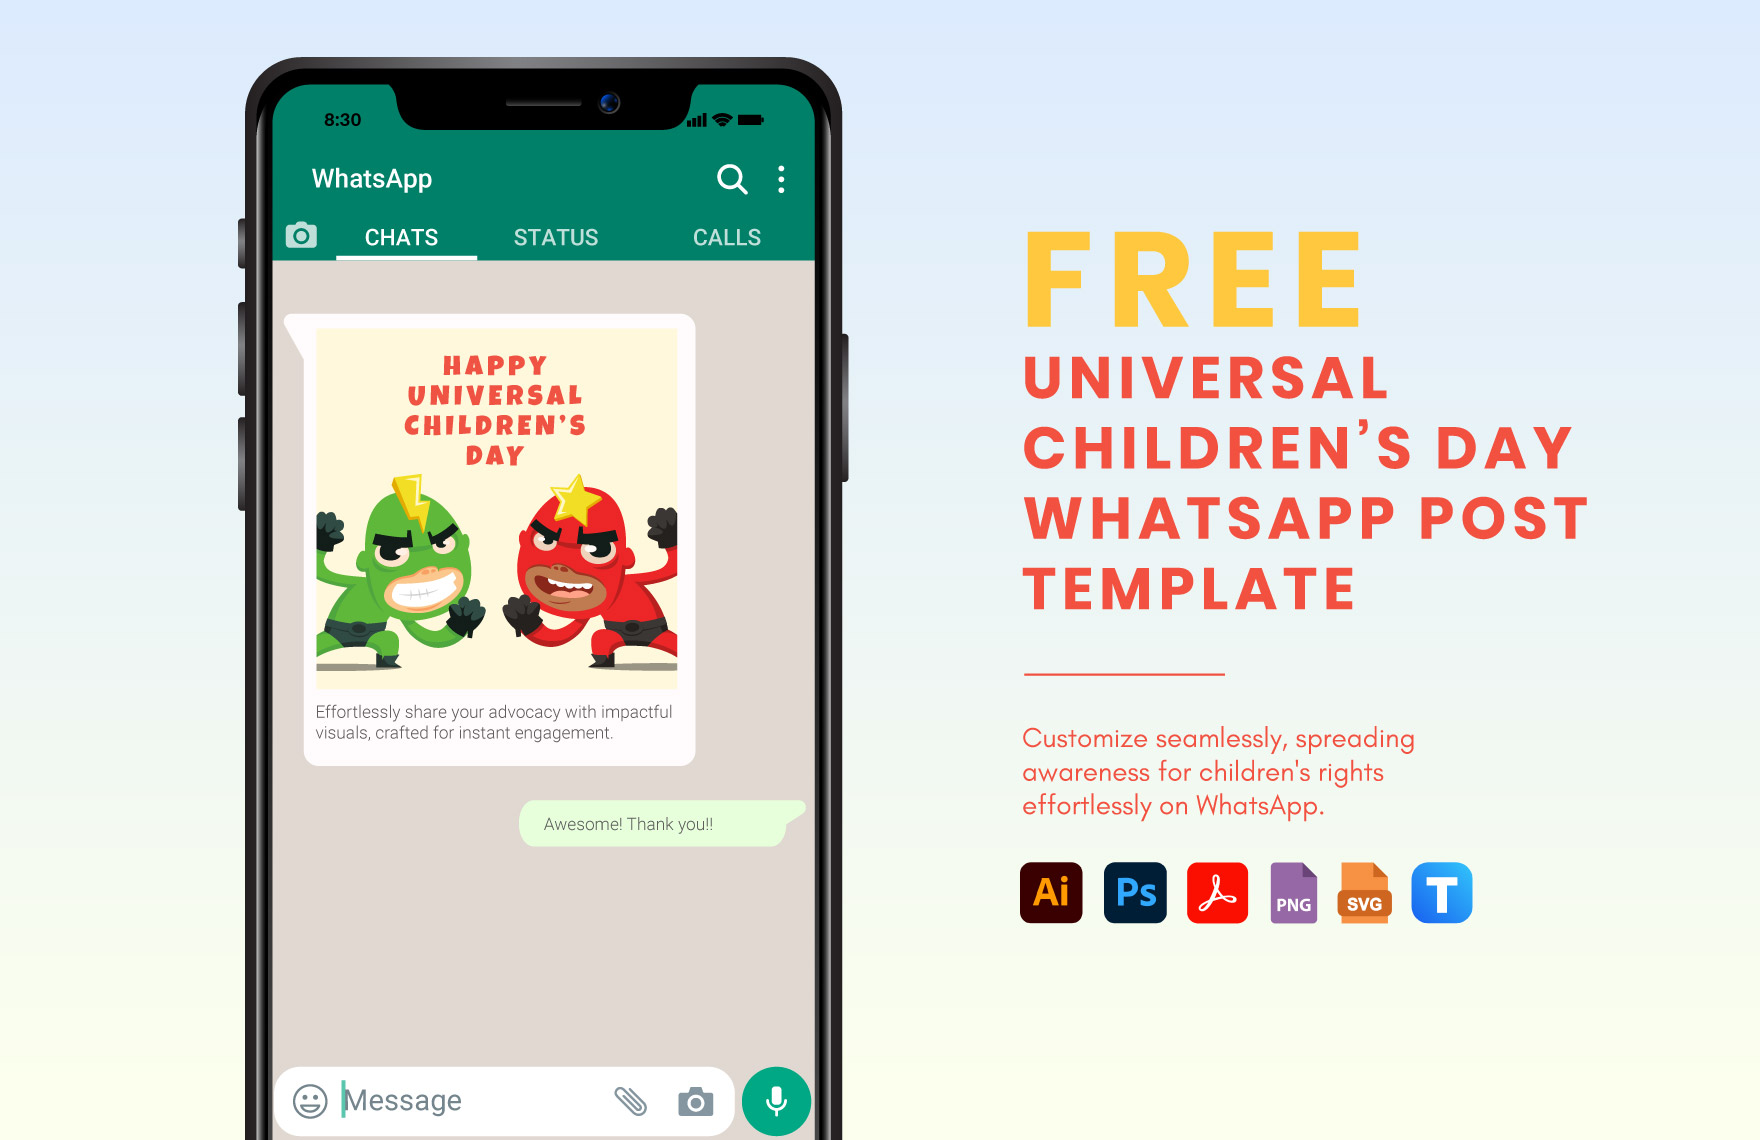 Universal Children’s Day WhatsApp Post Template